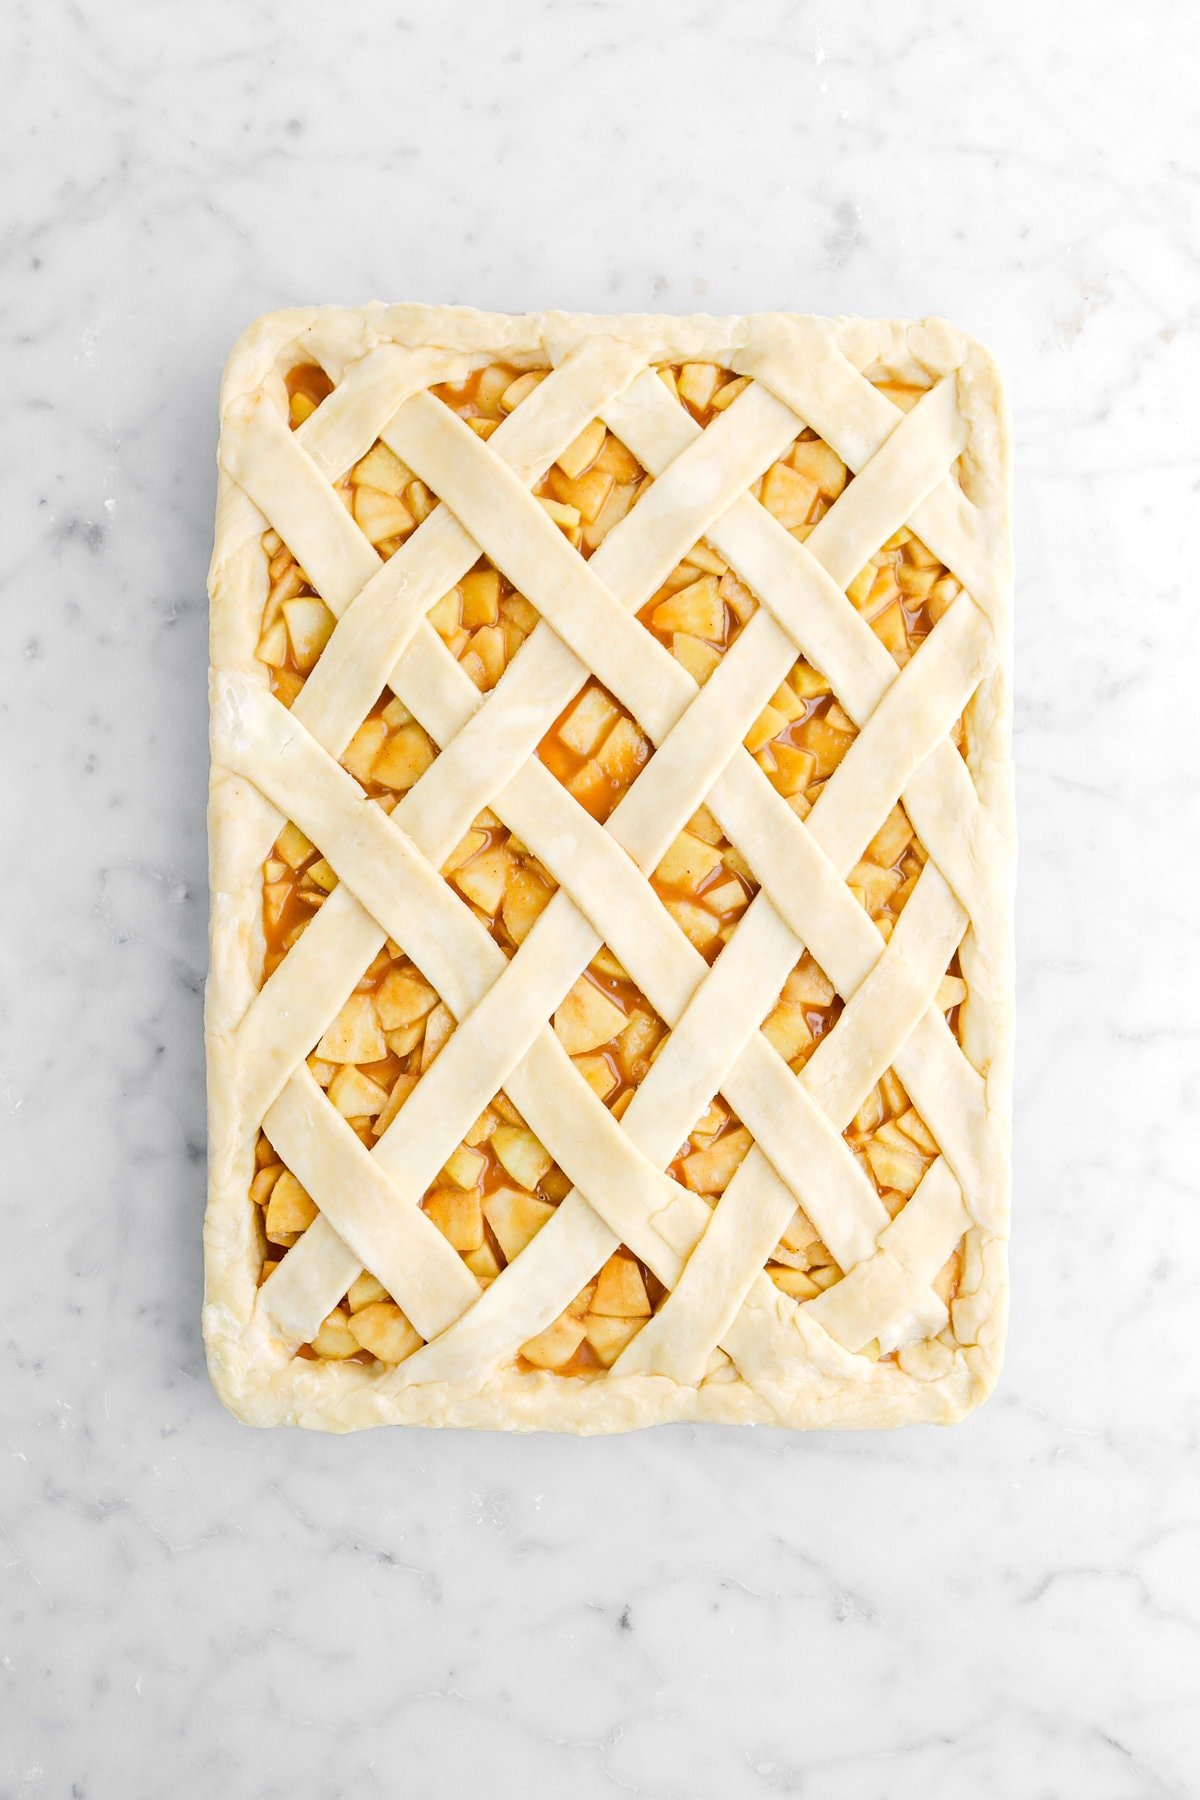 sealed lattice top on apple slab pie.